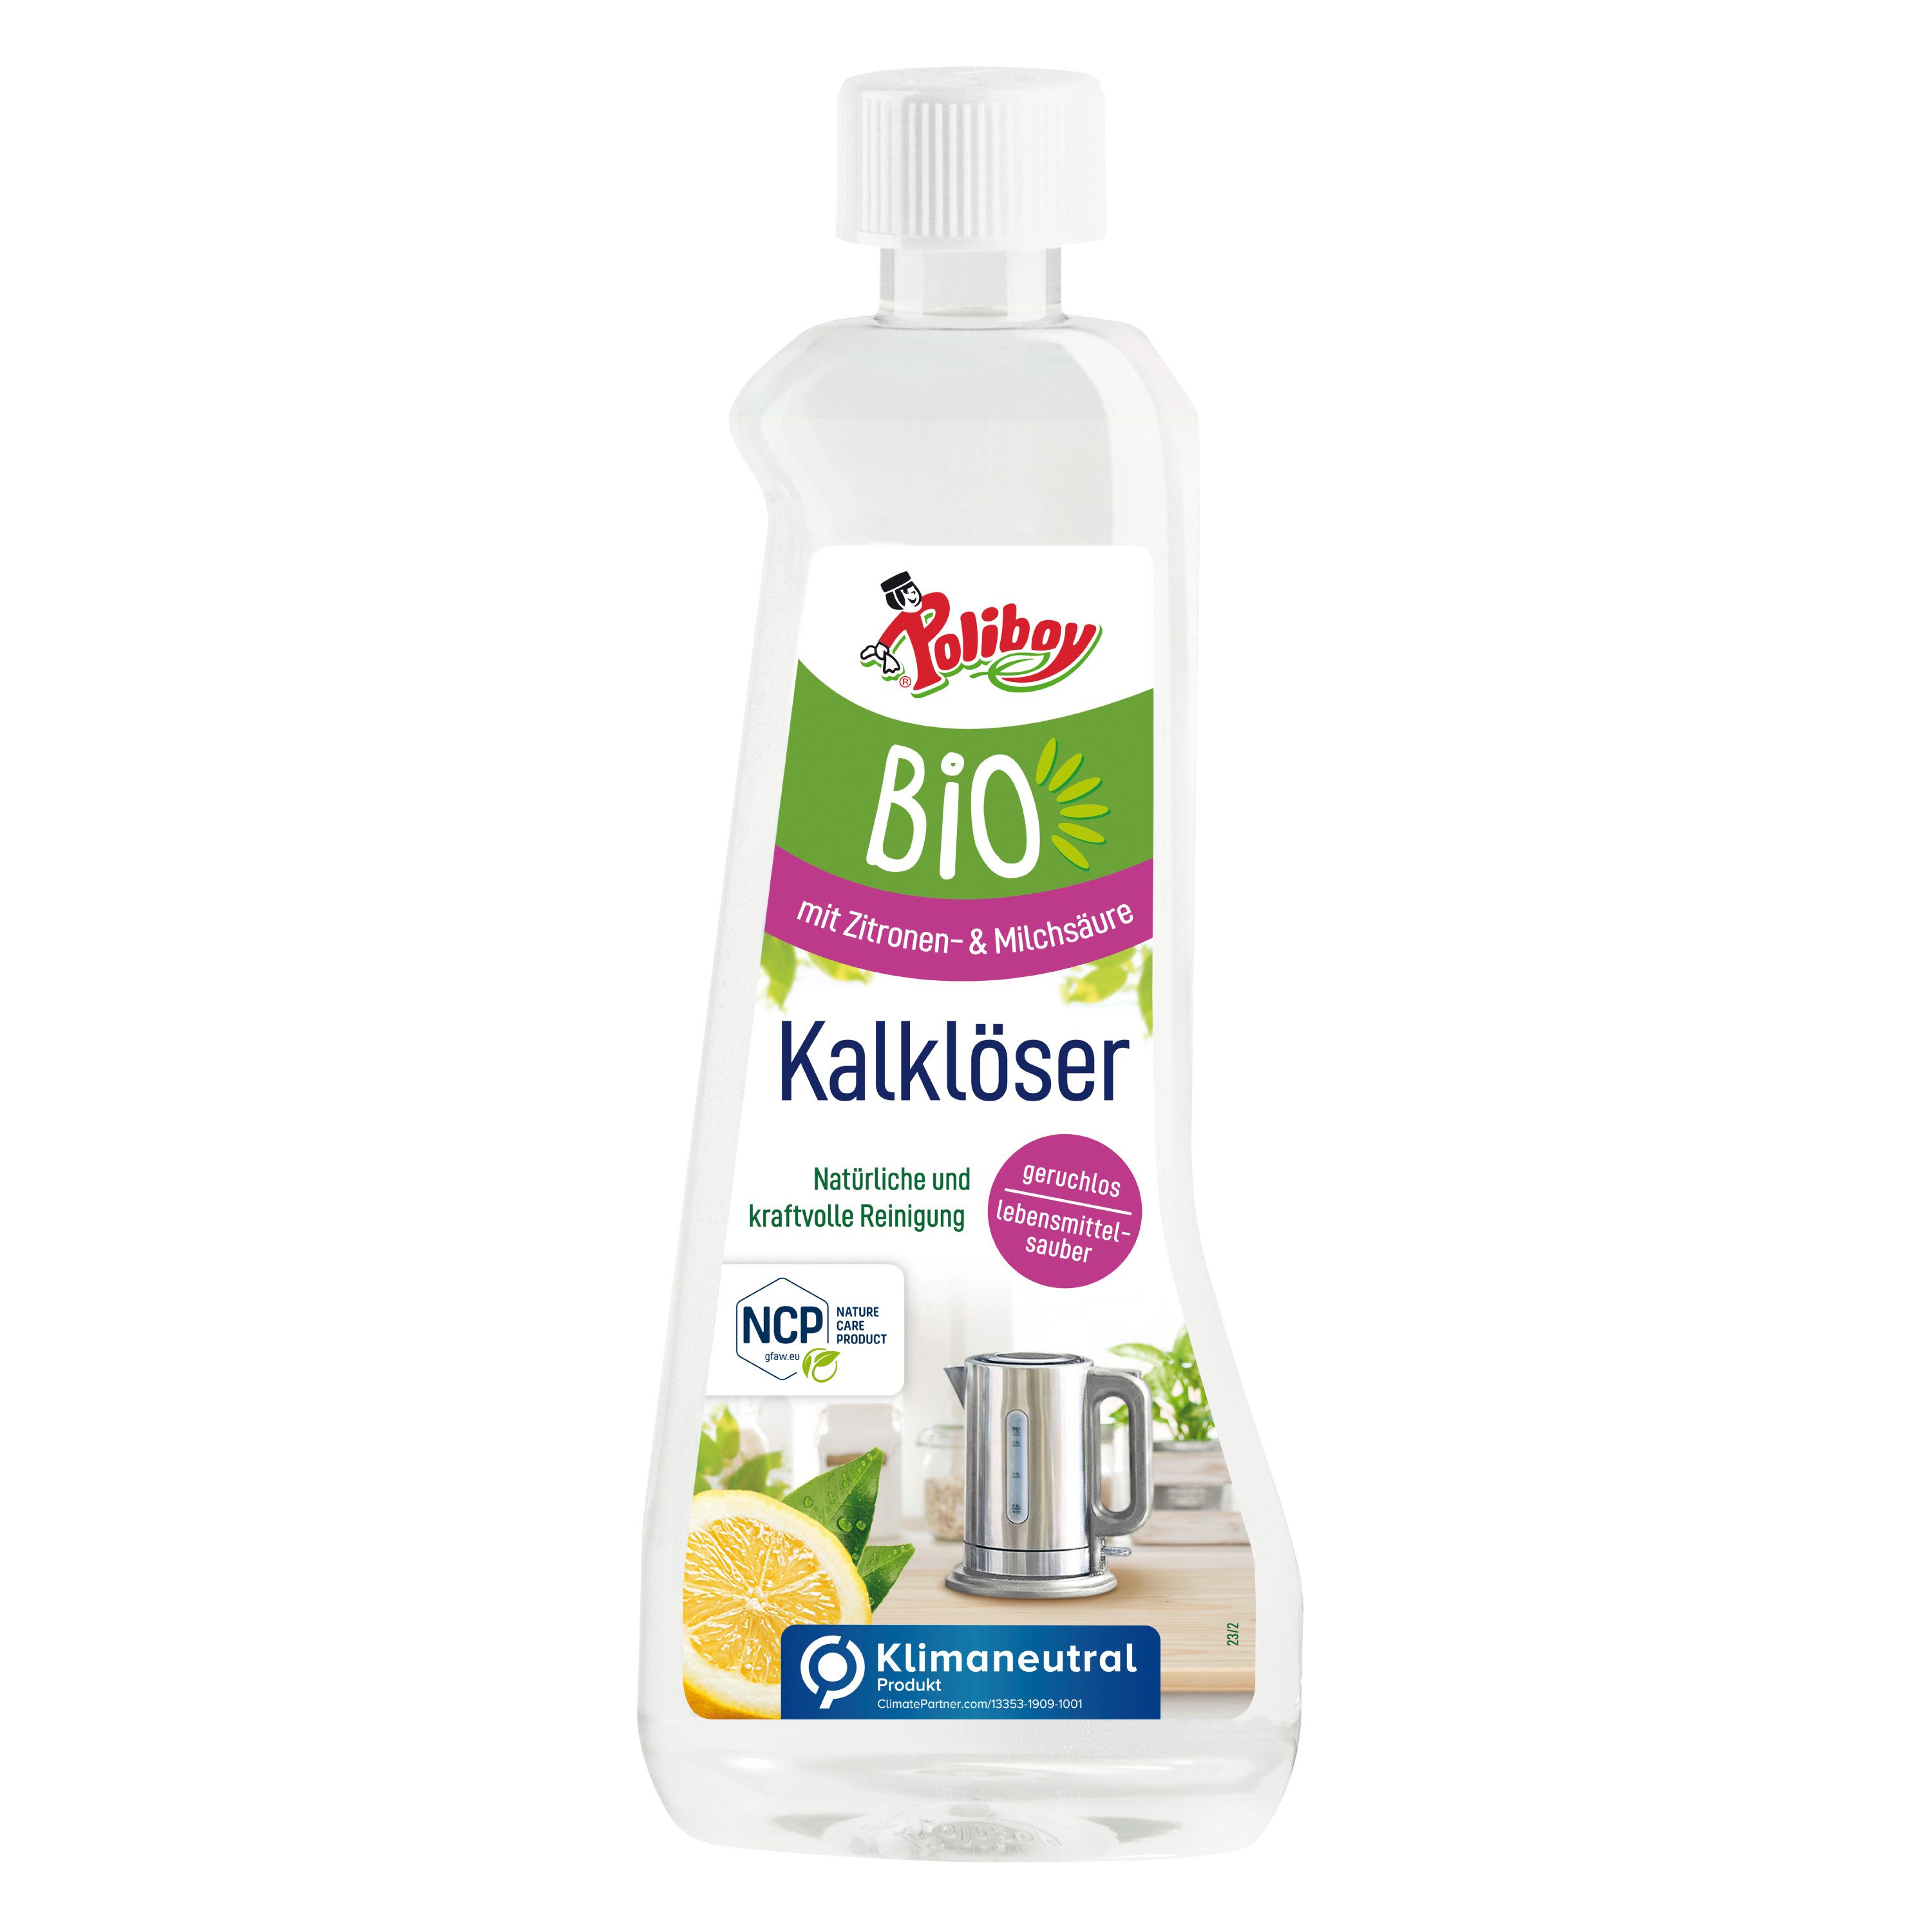 poliboy - 500 ml - Bio Kalklöser (für ein hygienisches & natürliches Entkalken - Made in Germany)